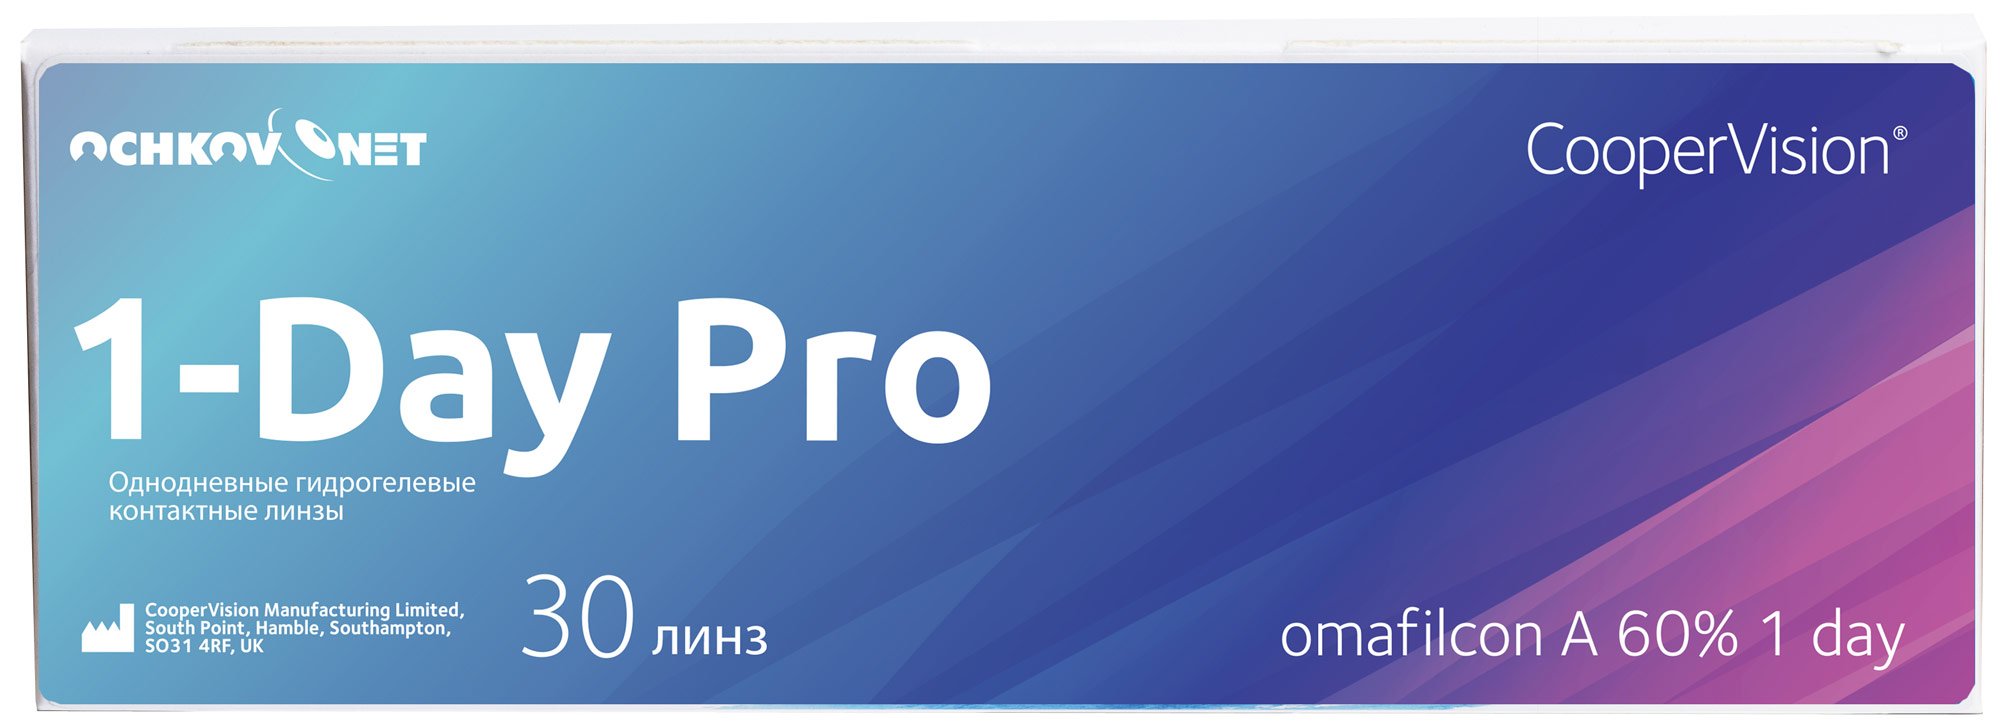 Купить Контактные линзы Ochkov.Net 1-Day Pro 30 линз 8.7, -12